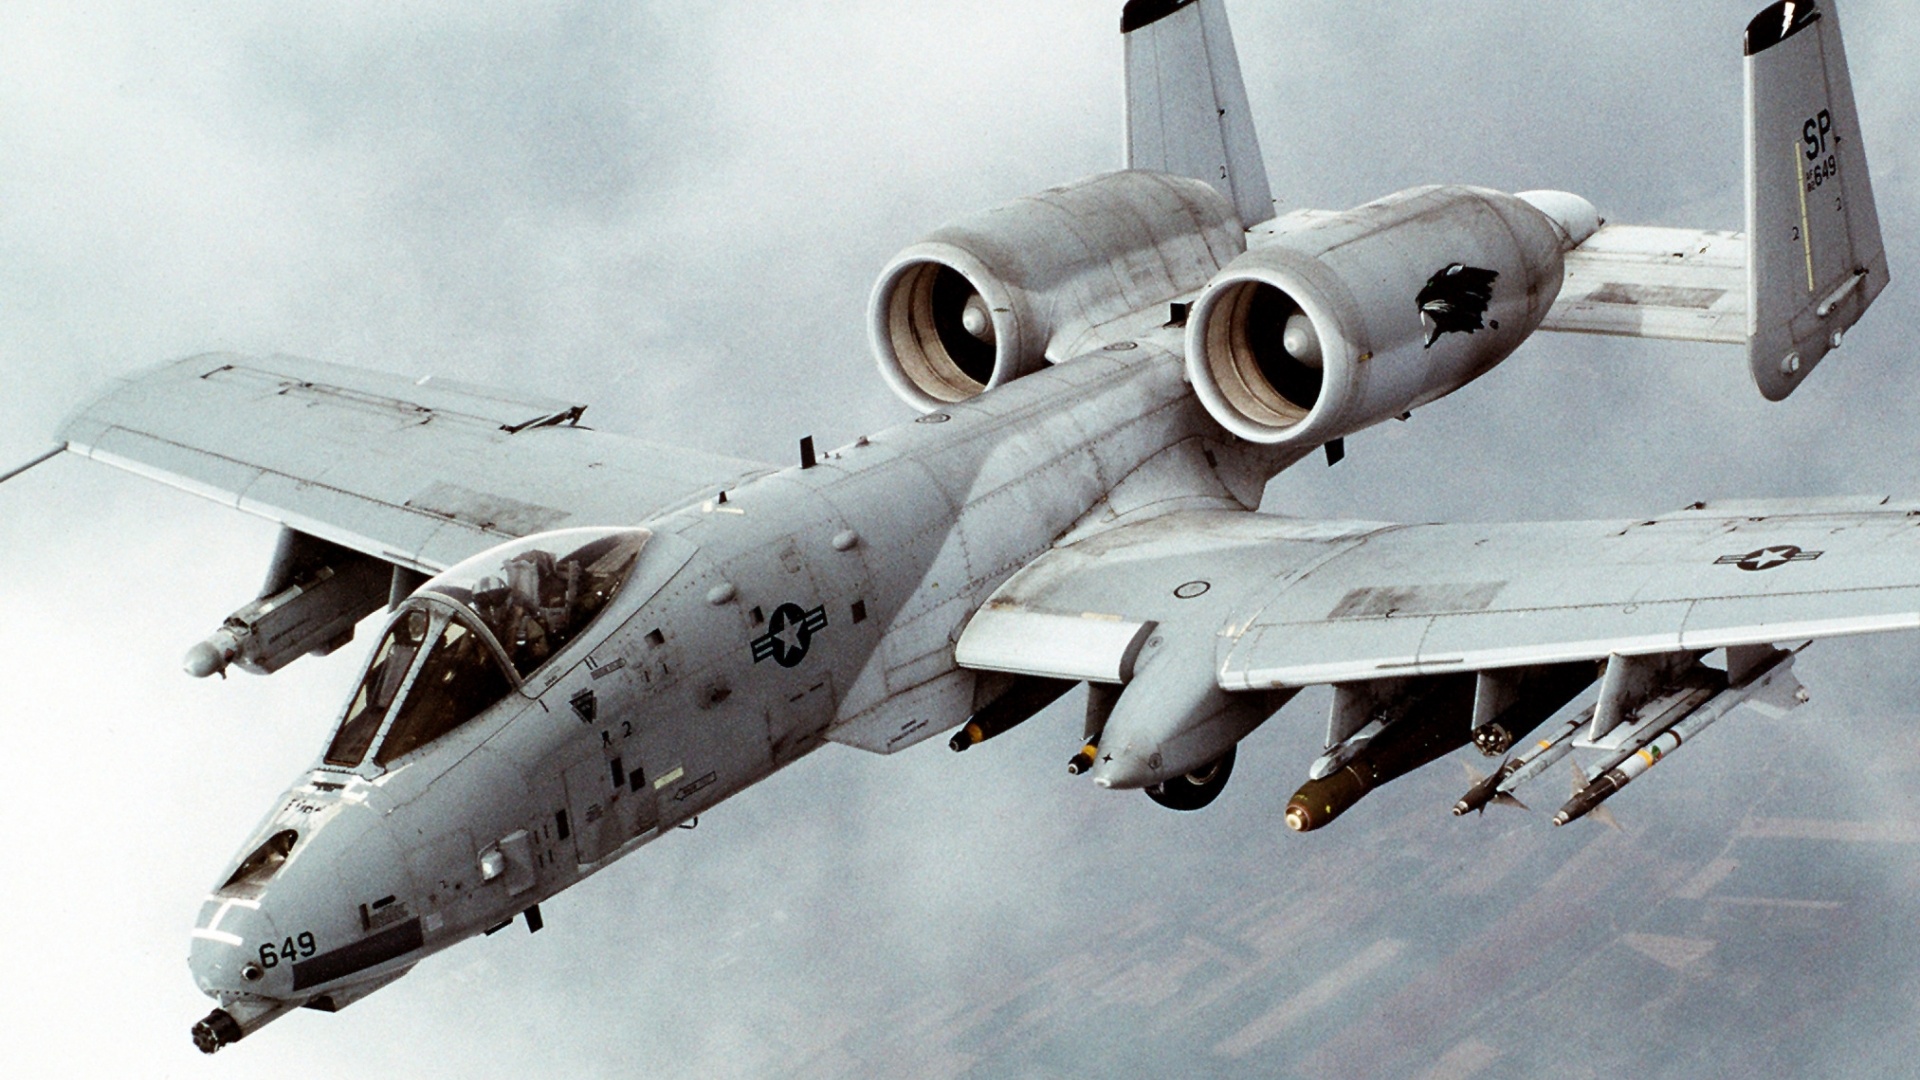 Military Thunderbolt Jet Planes